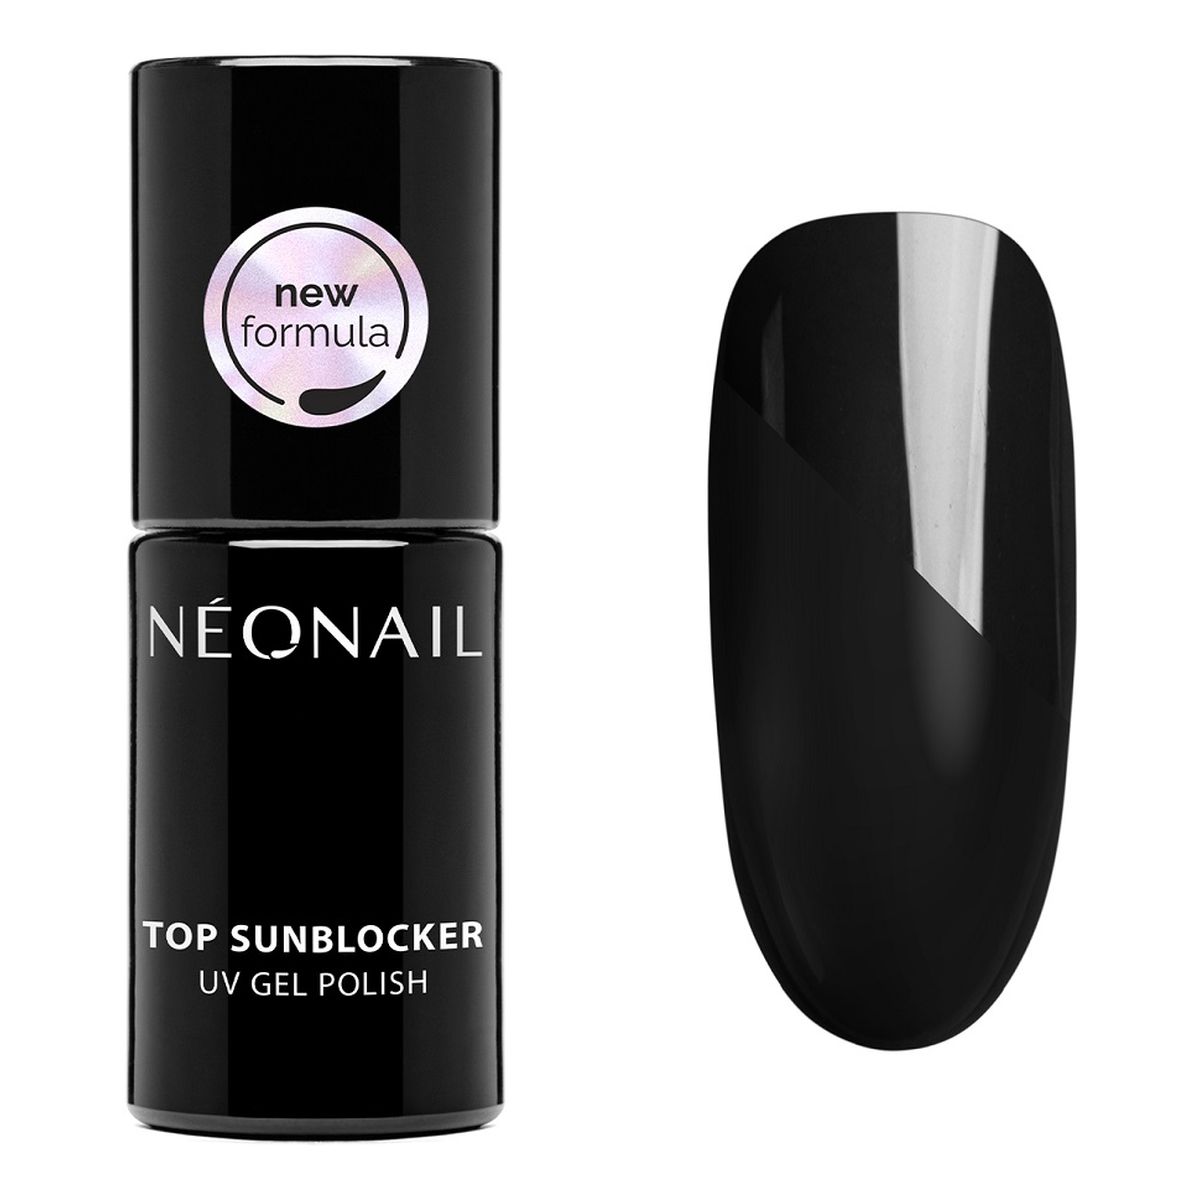 NeoNail Top sunblocker pro top hybrydowy 7,2 ml 7.2ml